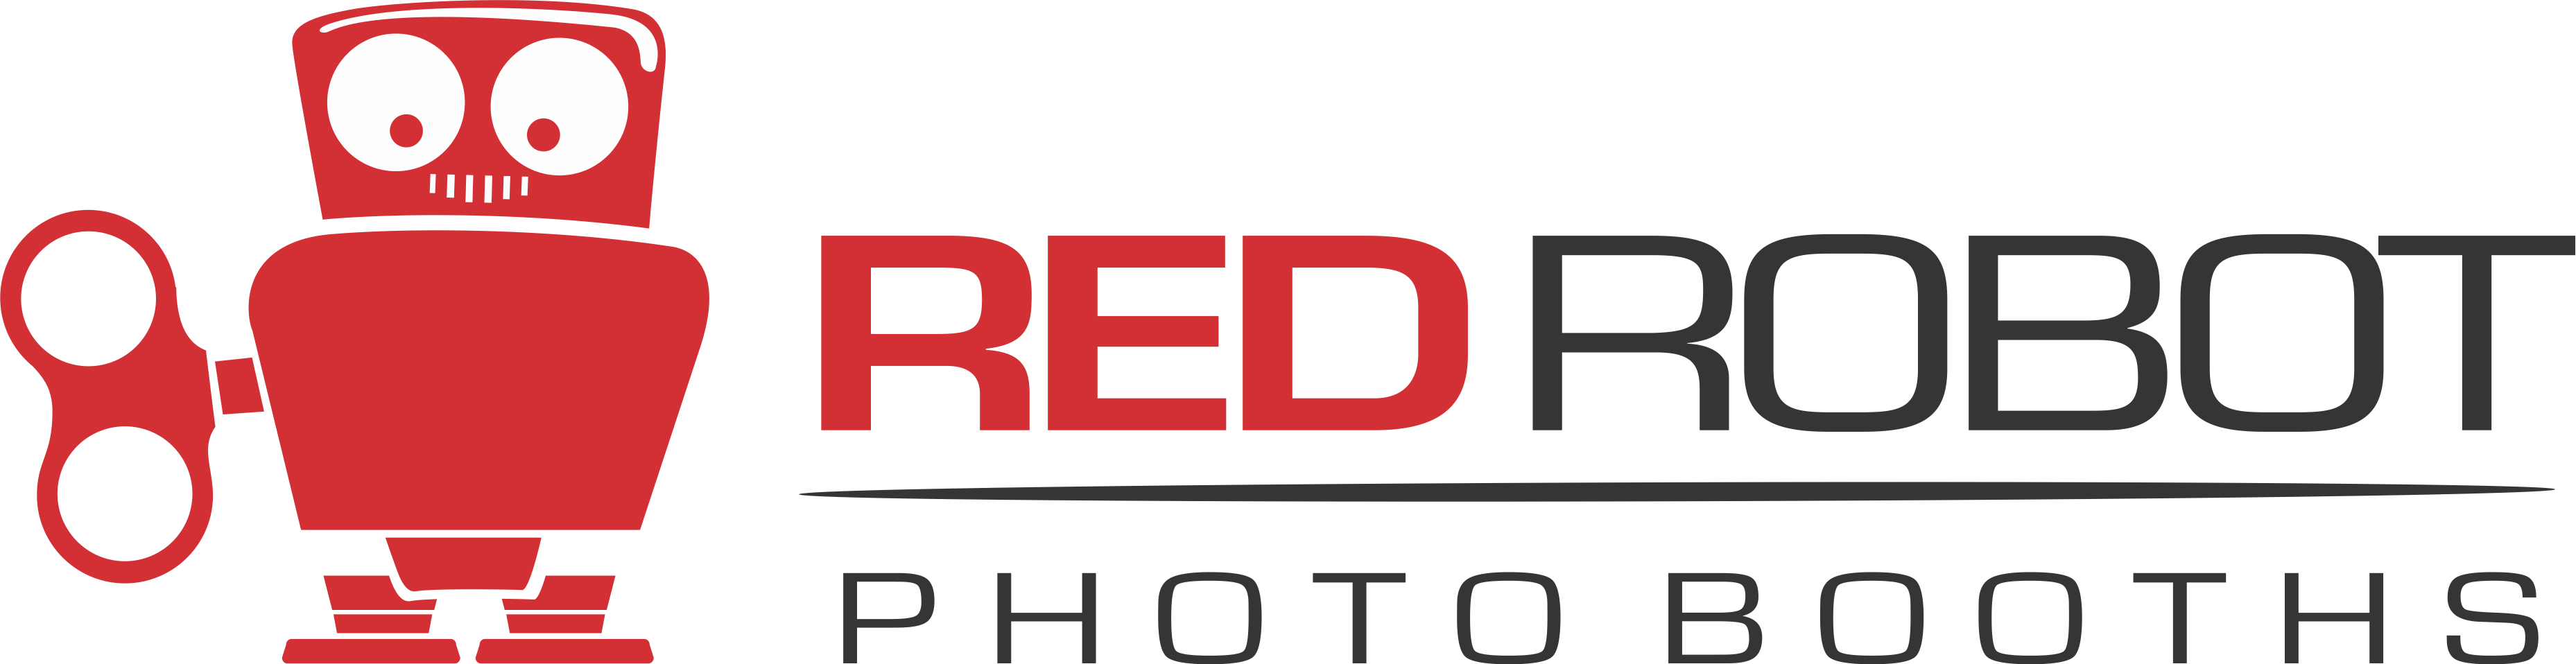 Red Robot Logo - Red Robot logo 2